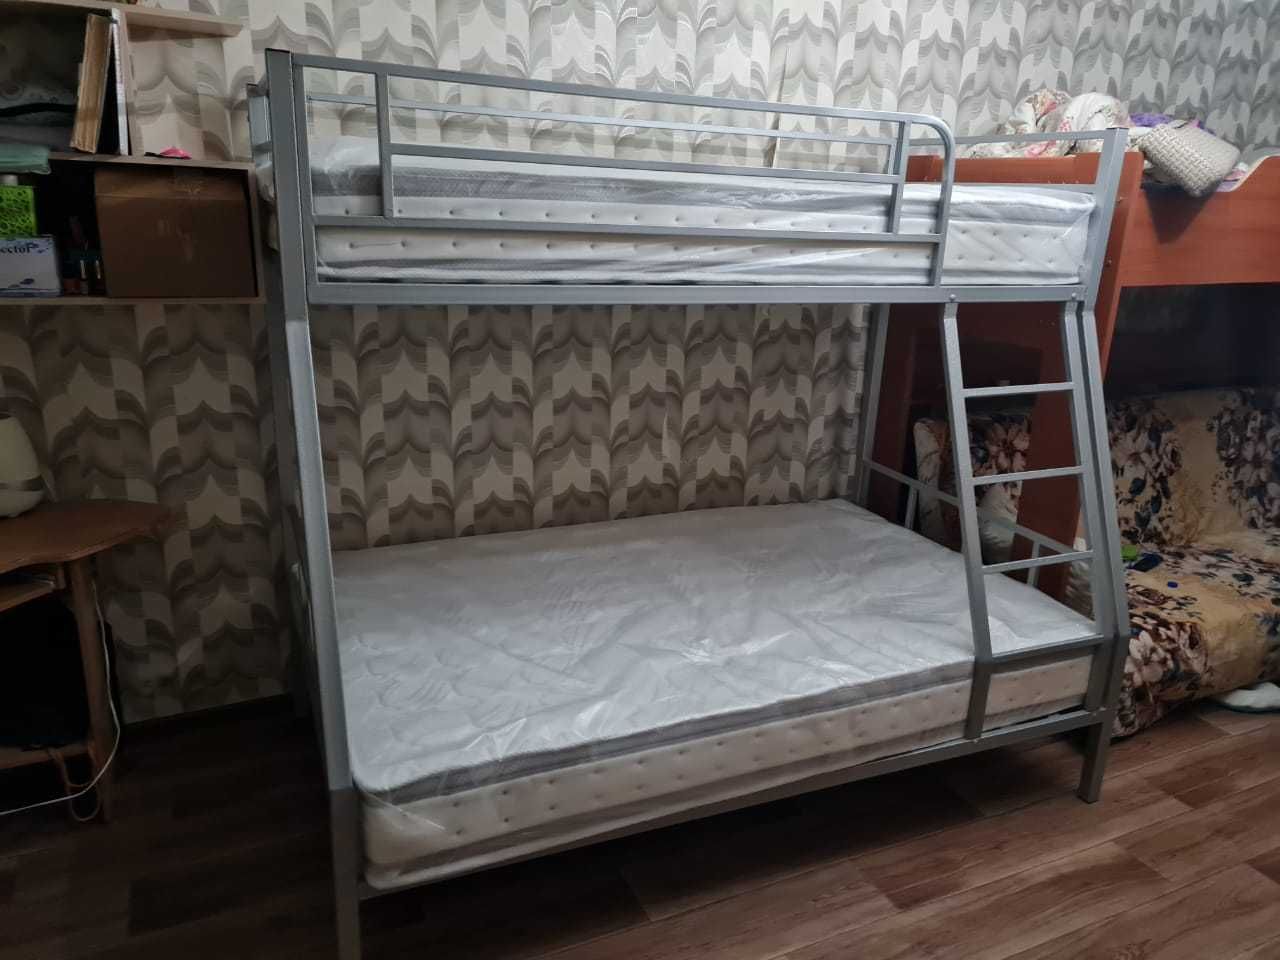 Металлическая двухъярусная кровать для взрослых. Доставка из Алматы.